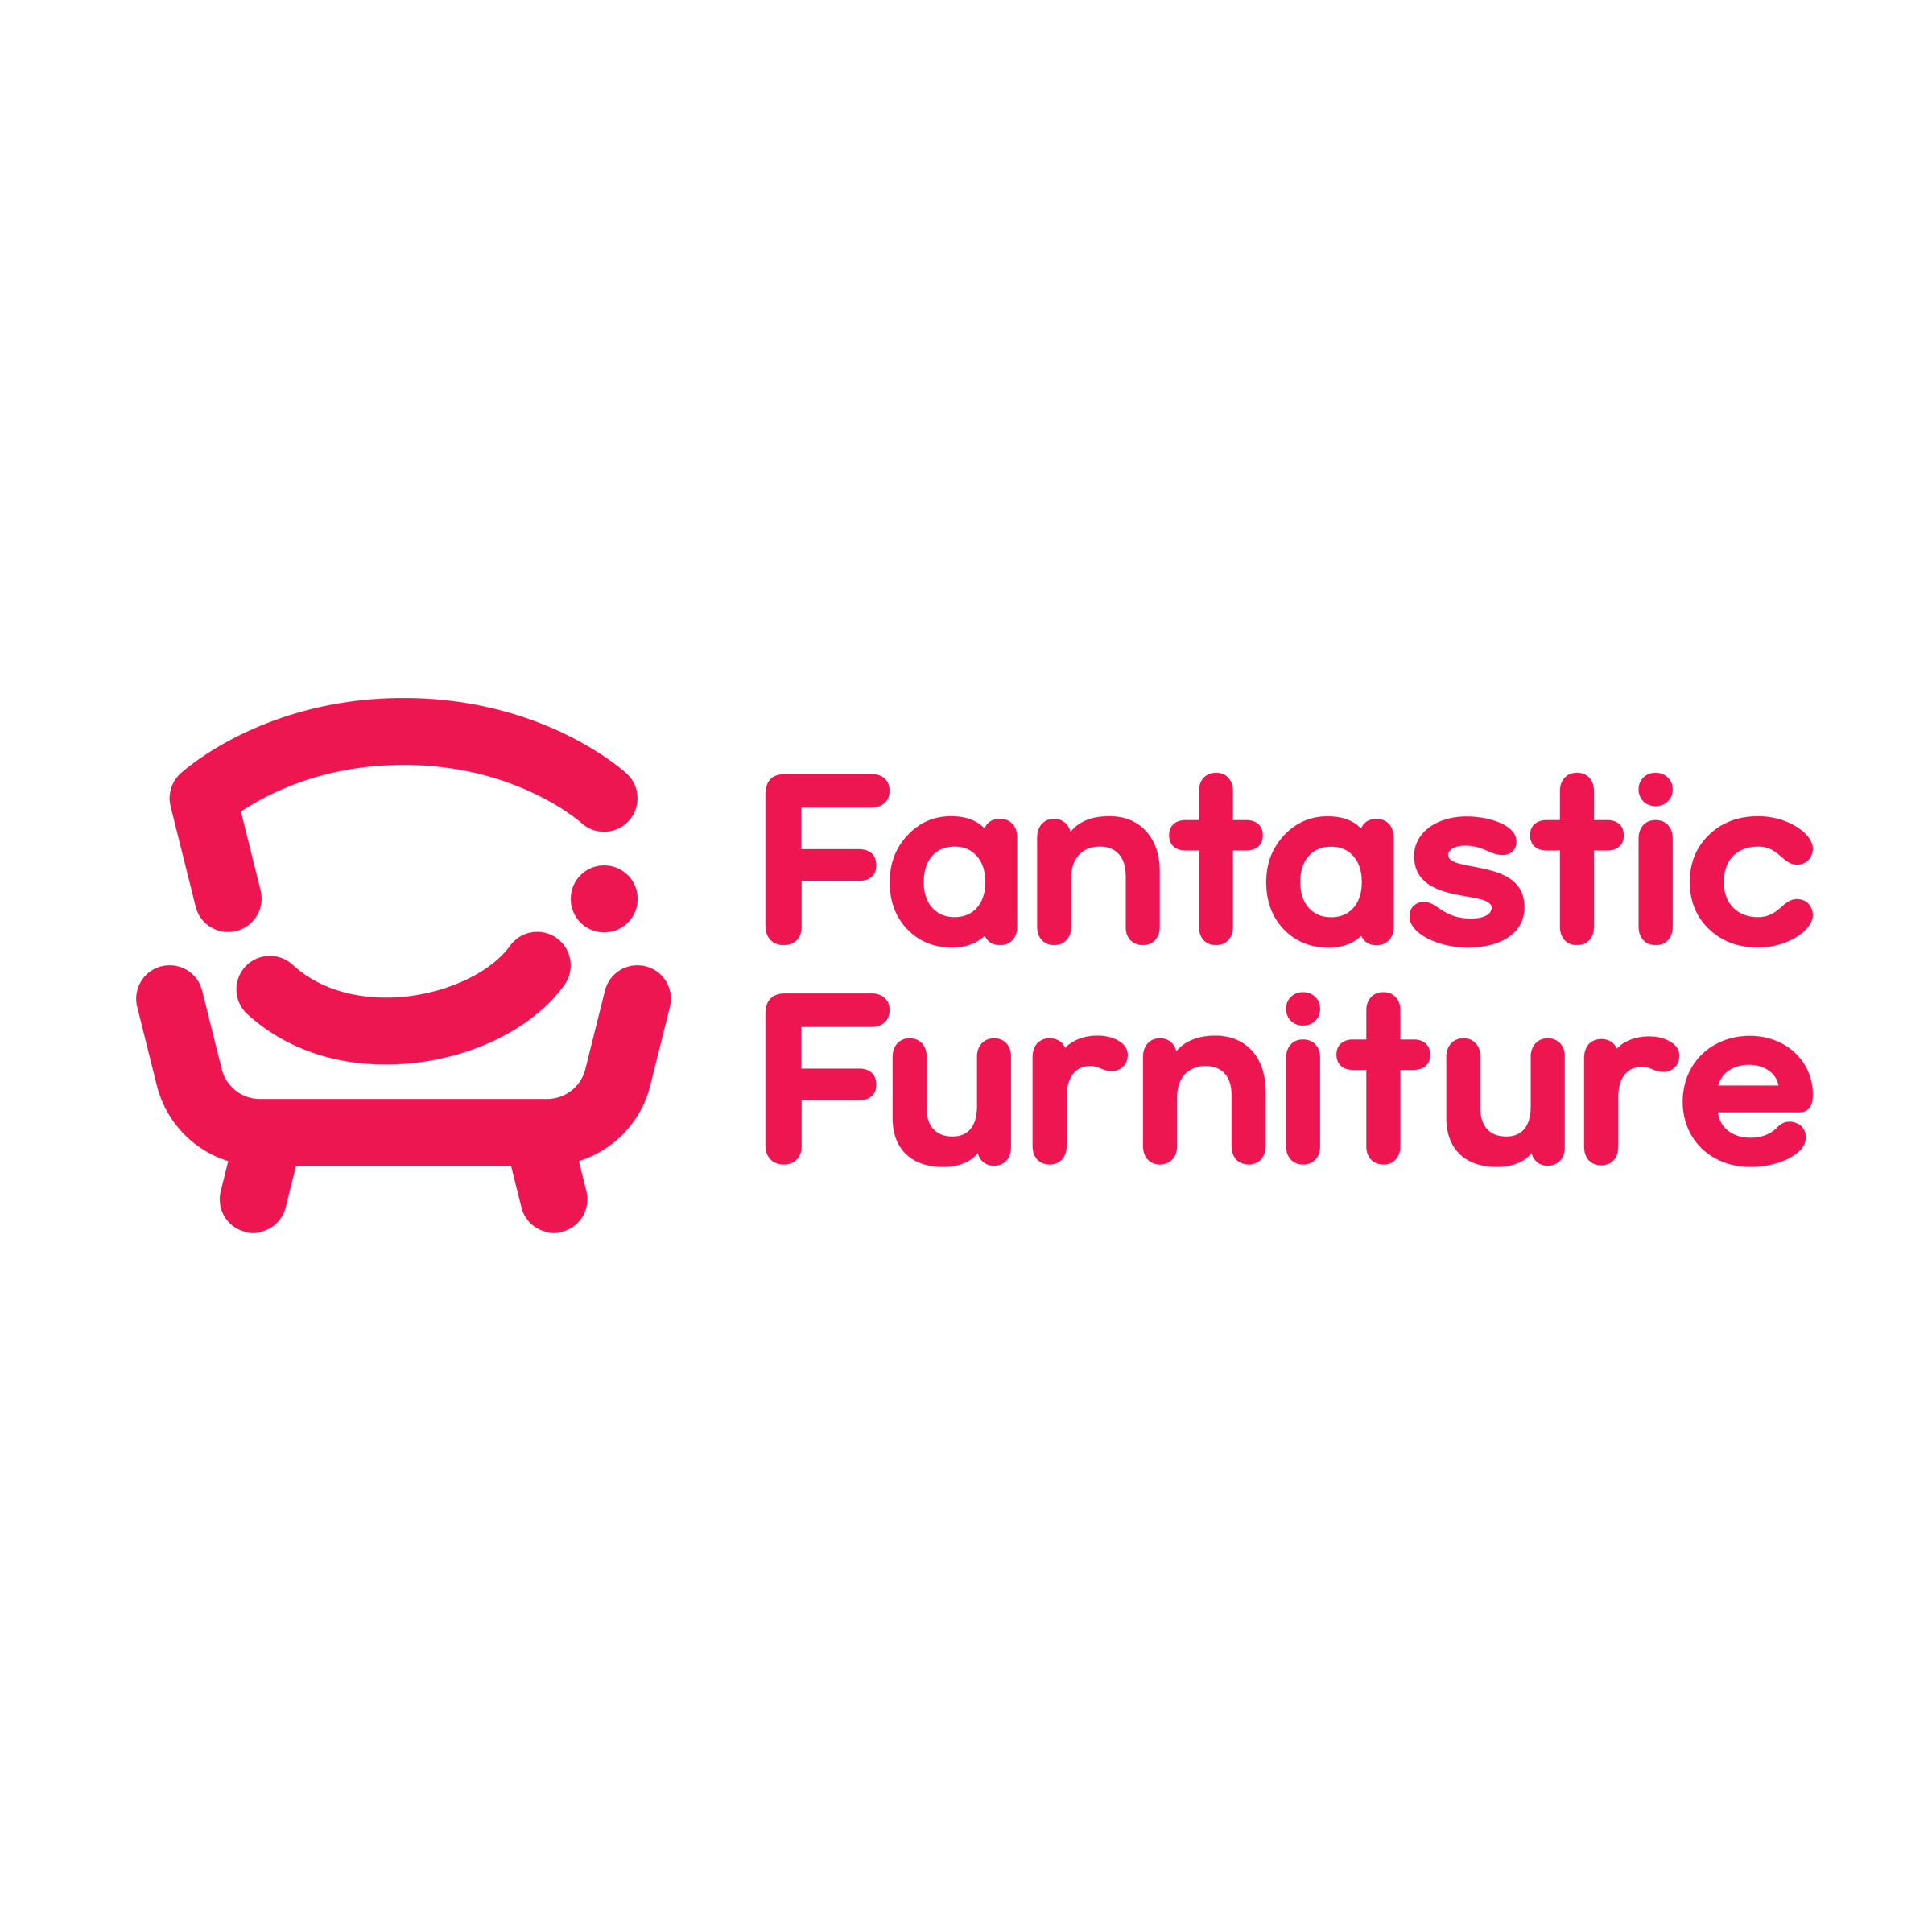 FantasticFurniture-brand-logo | Greenlit Brands